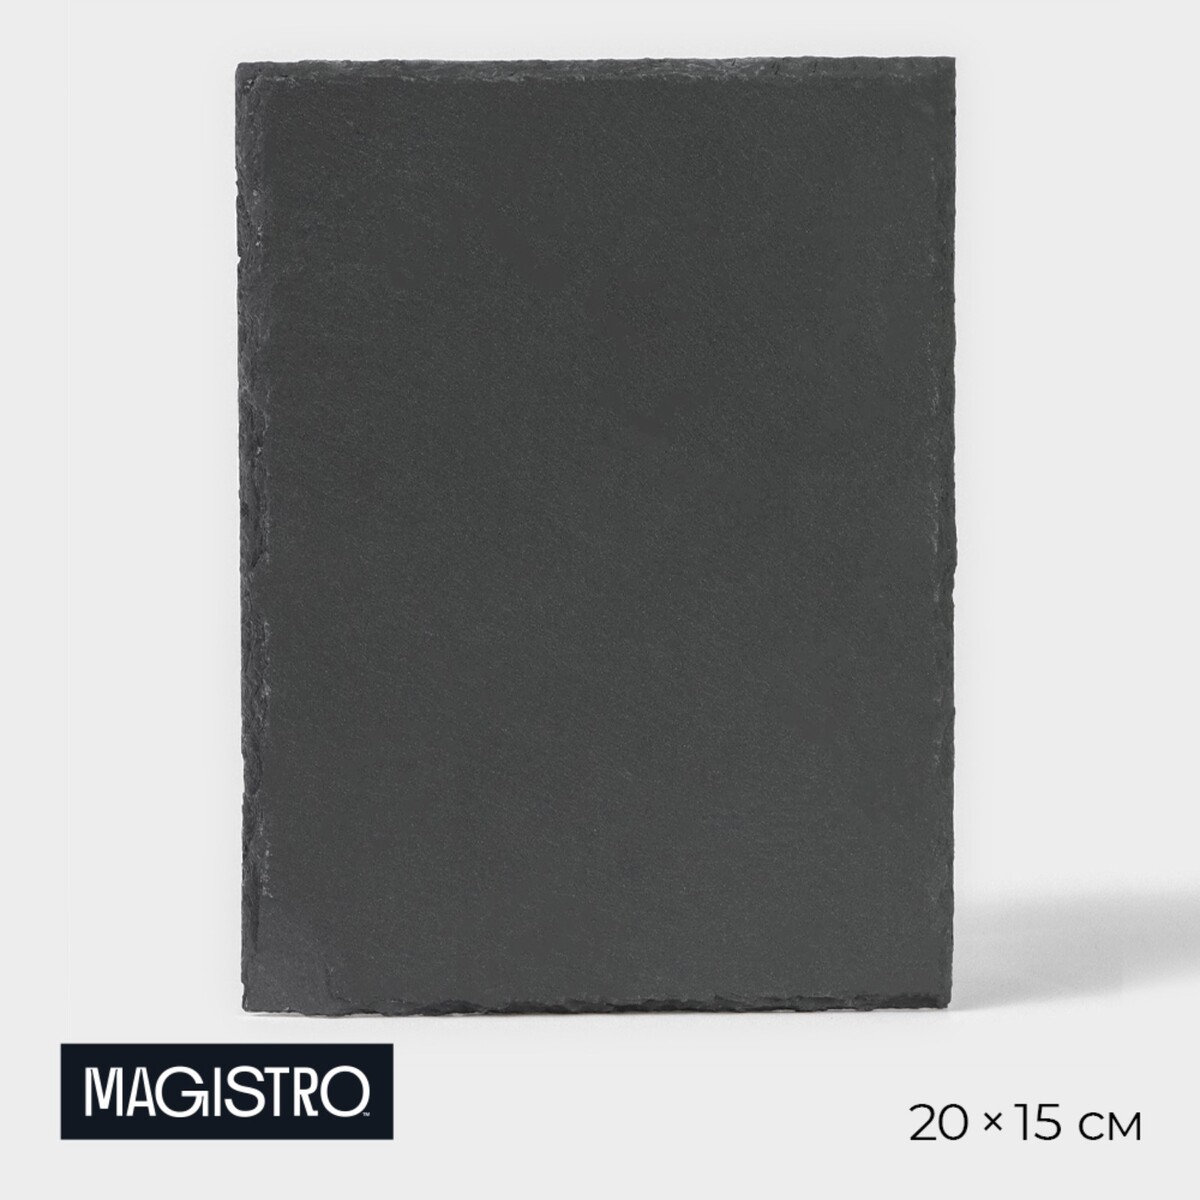 Доска для подачи из сланца magistro valley, 20×15 см доска для подачи из сланца magistro valley 20×40 см с кровостоком